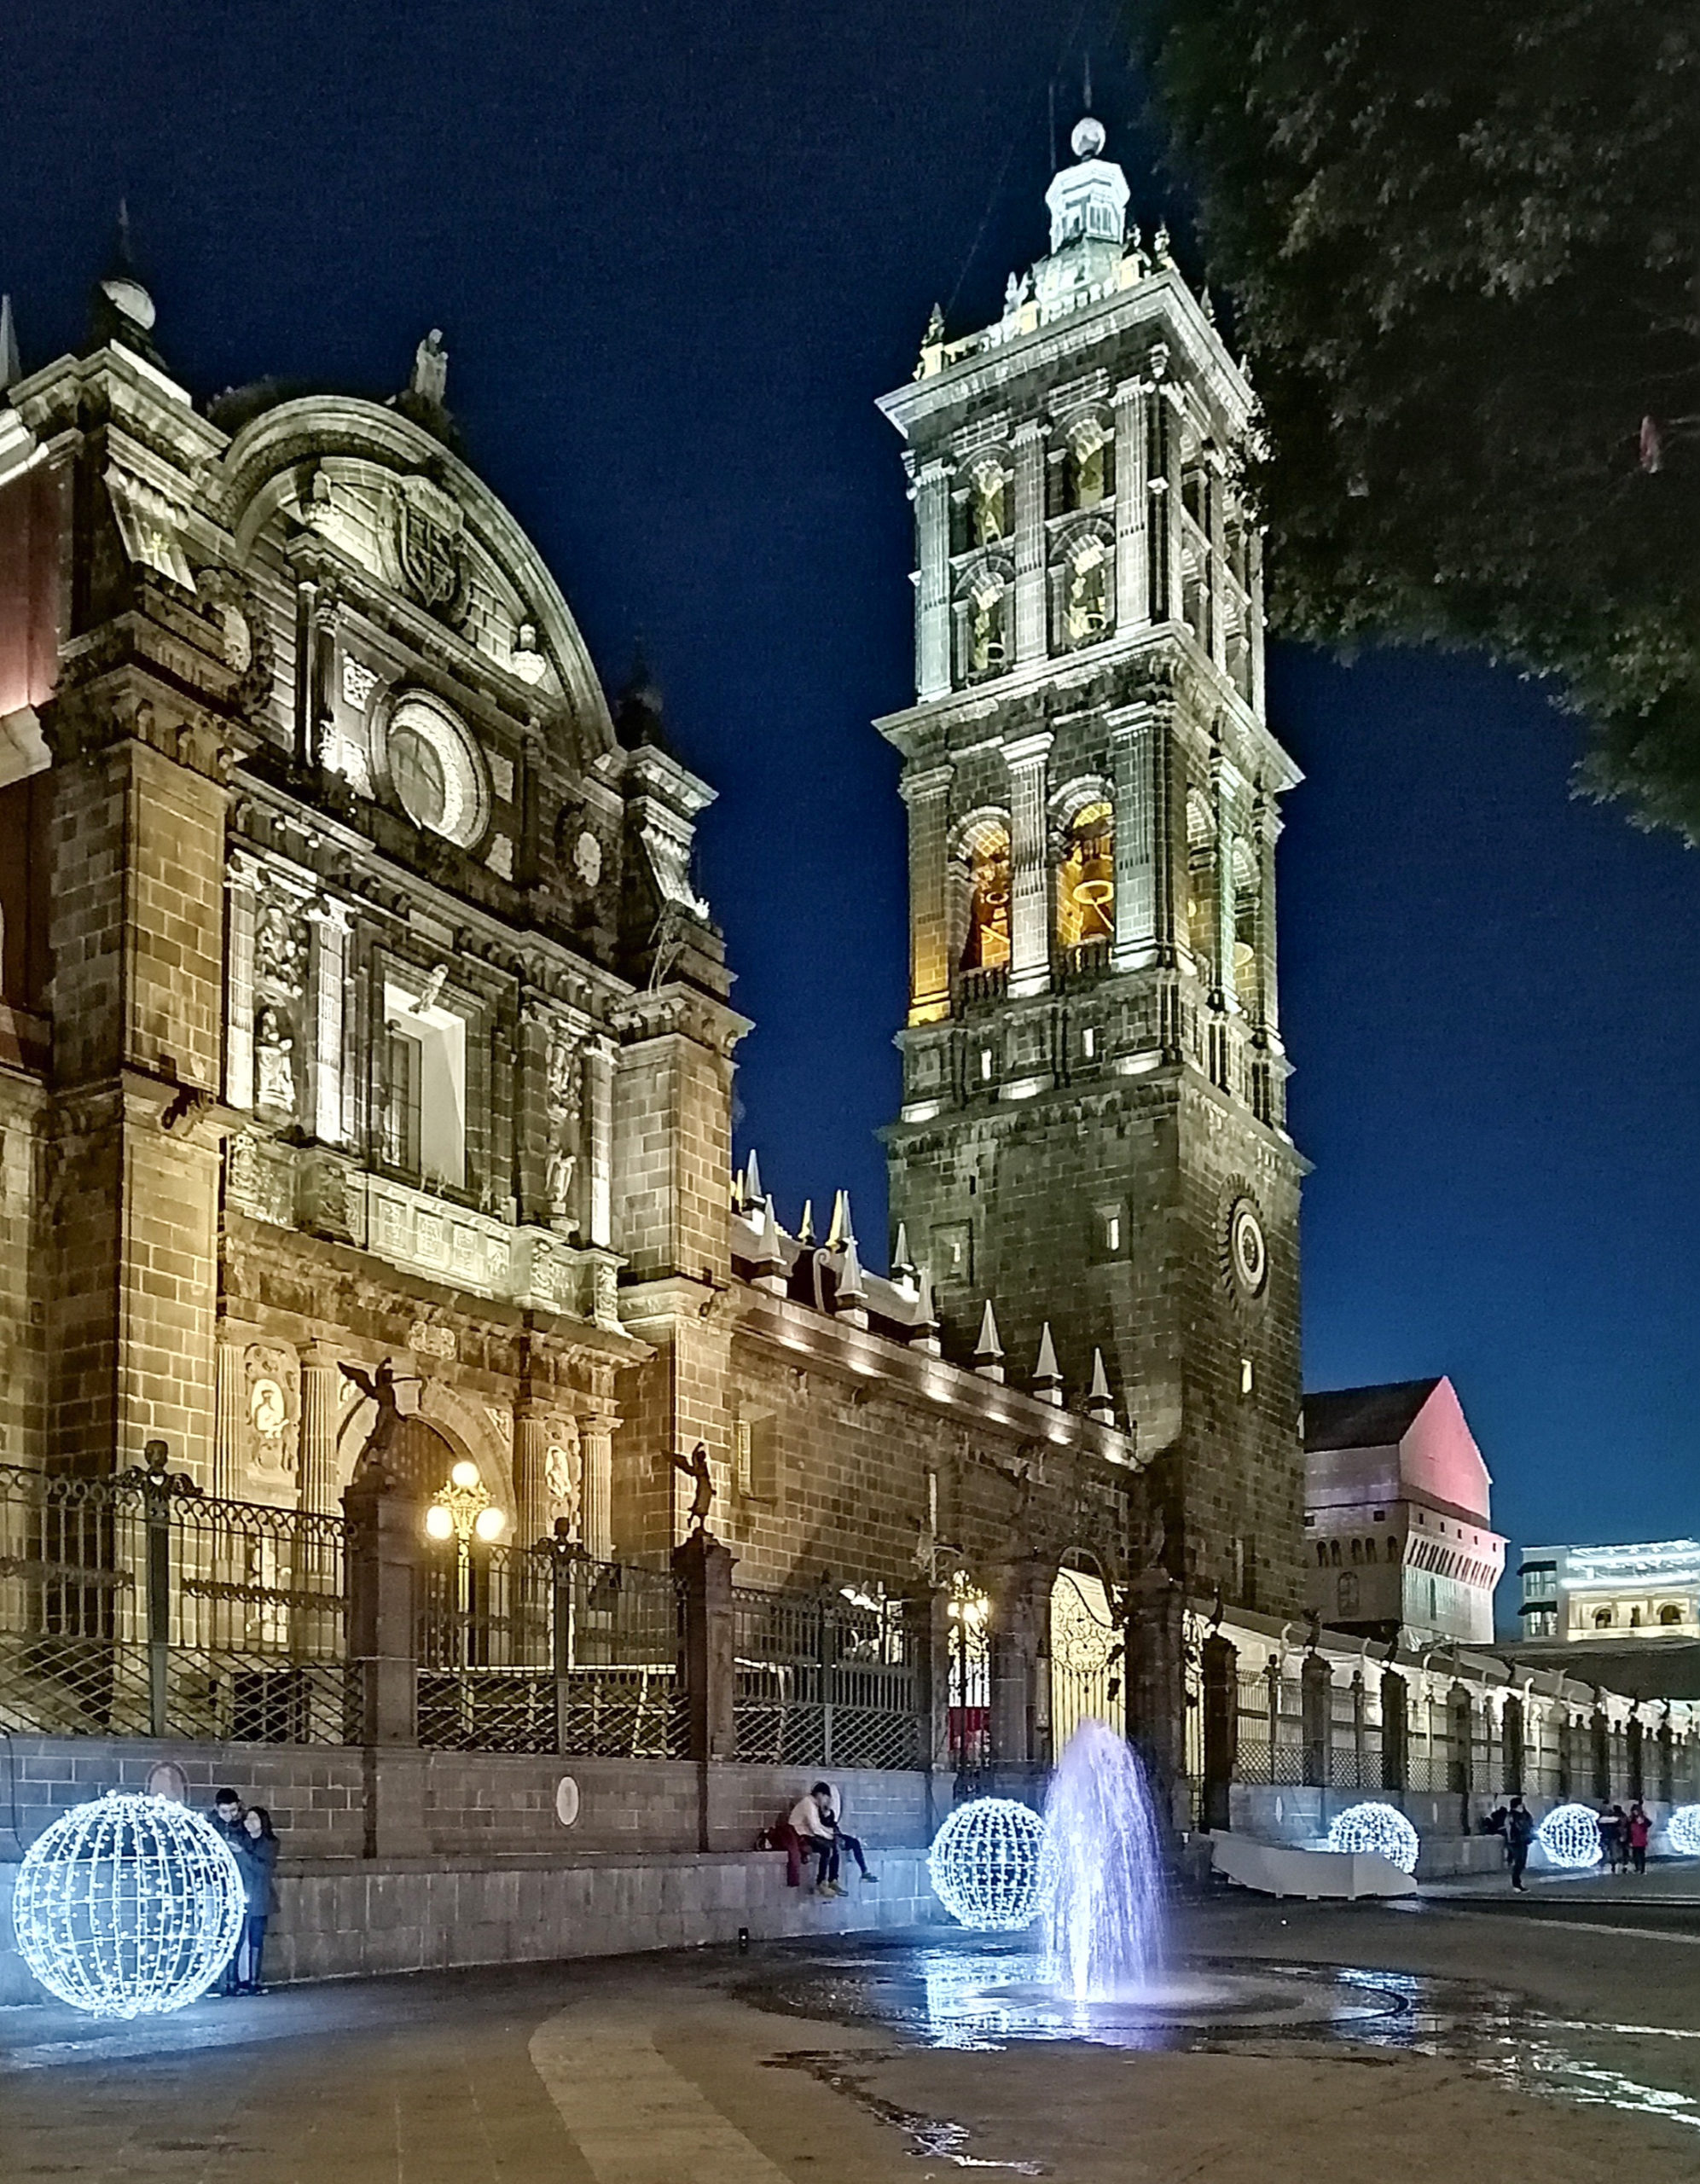 Noche en Catedral Centro histórico, Puebla, Mexico